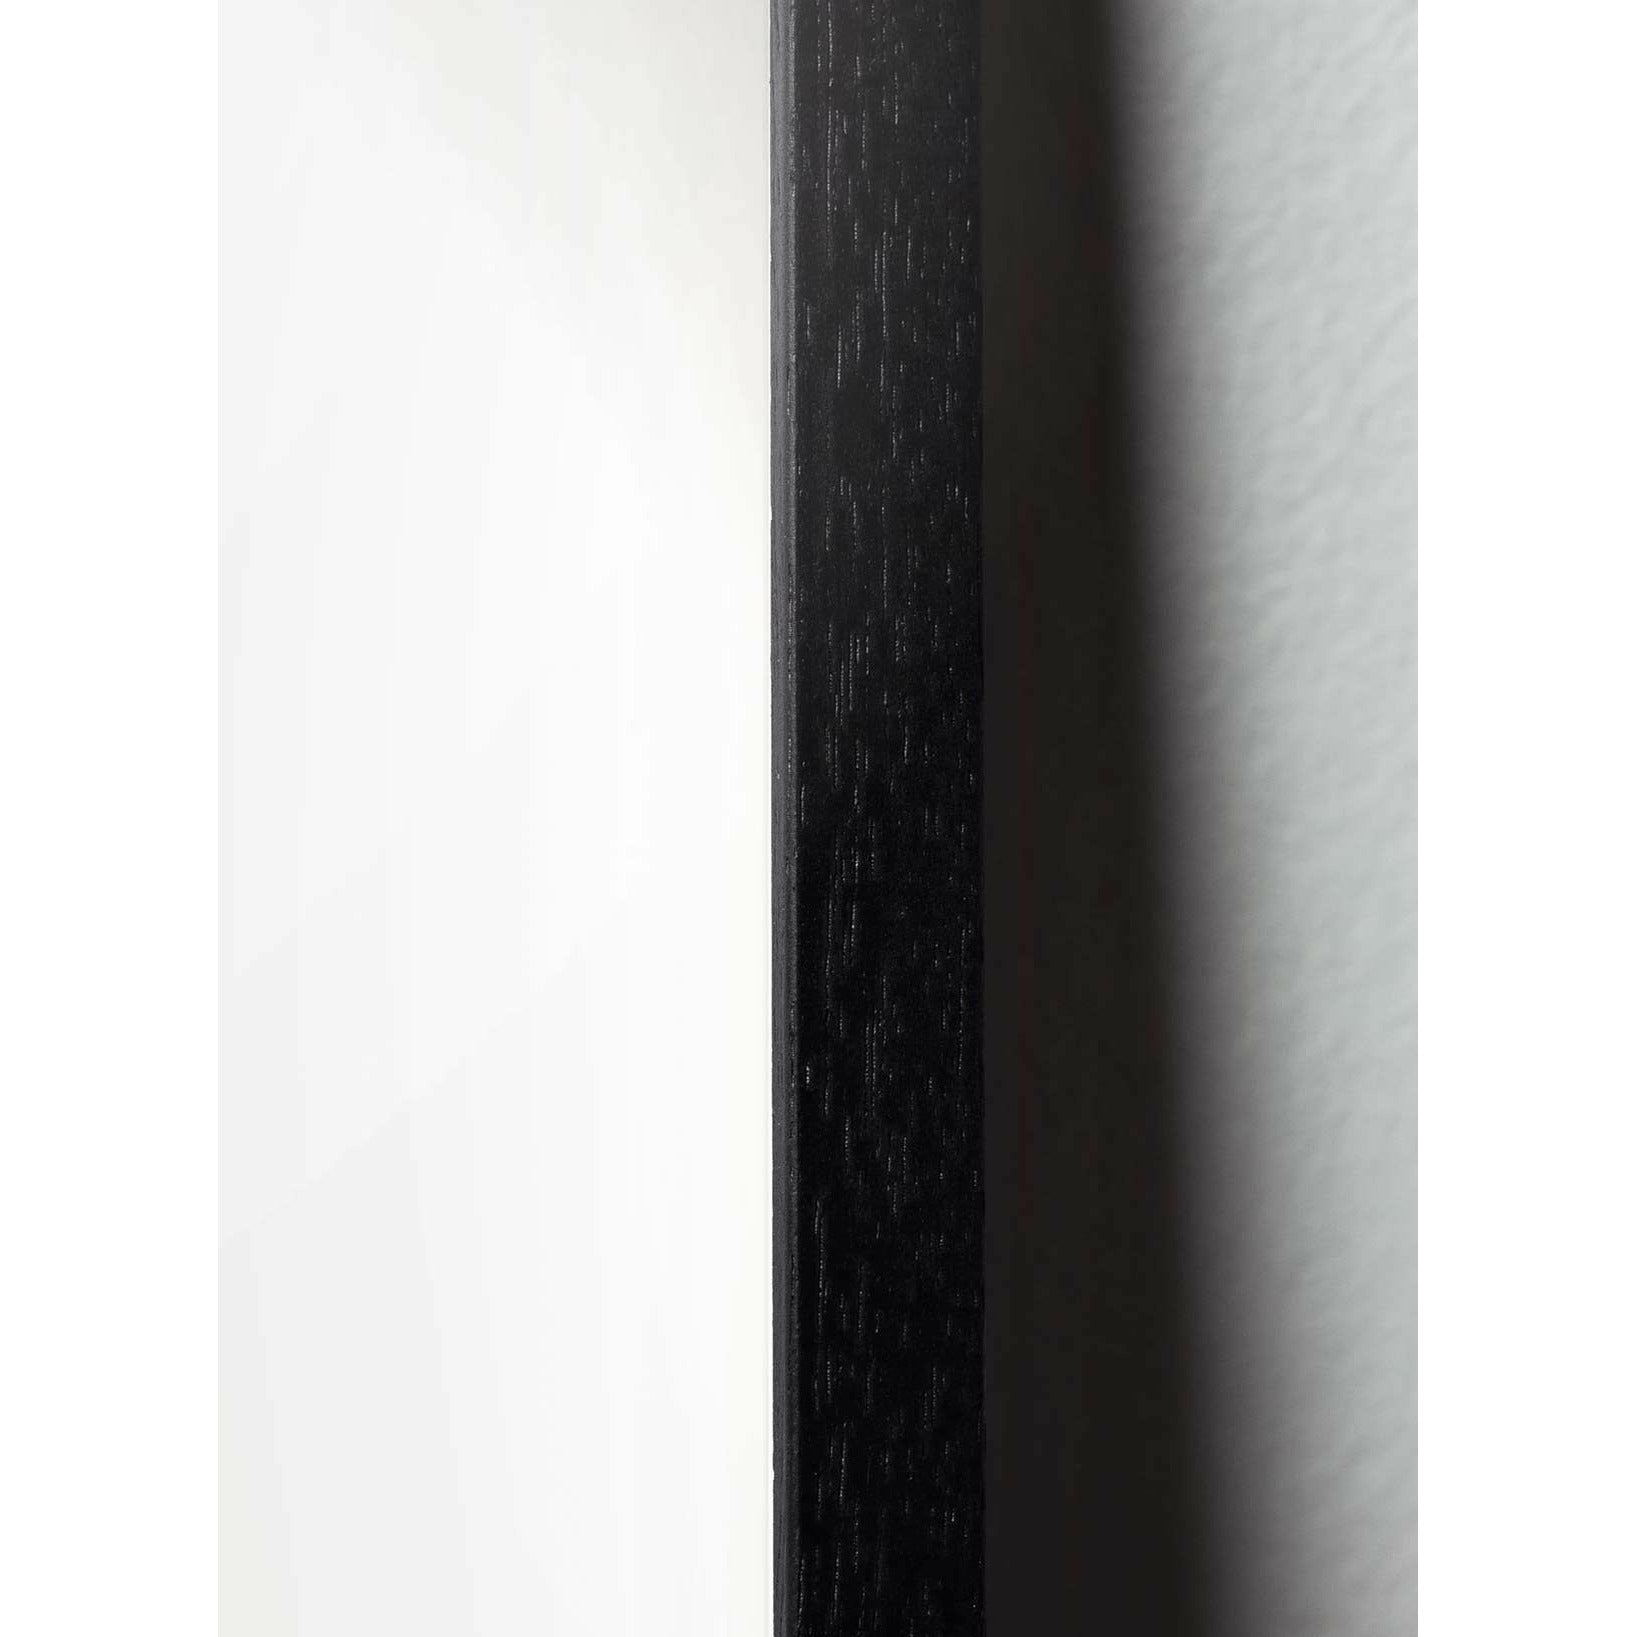 Brainchild Snowdrop Classic -affisch, ram i svart lackerat trä 30x40 cm, mörkblå bakgrund